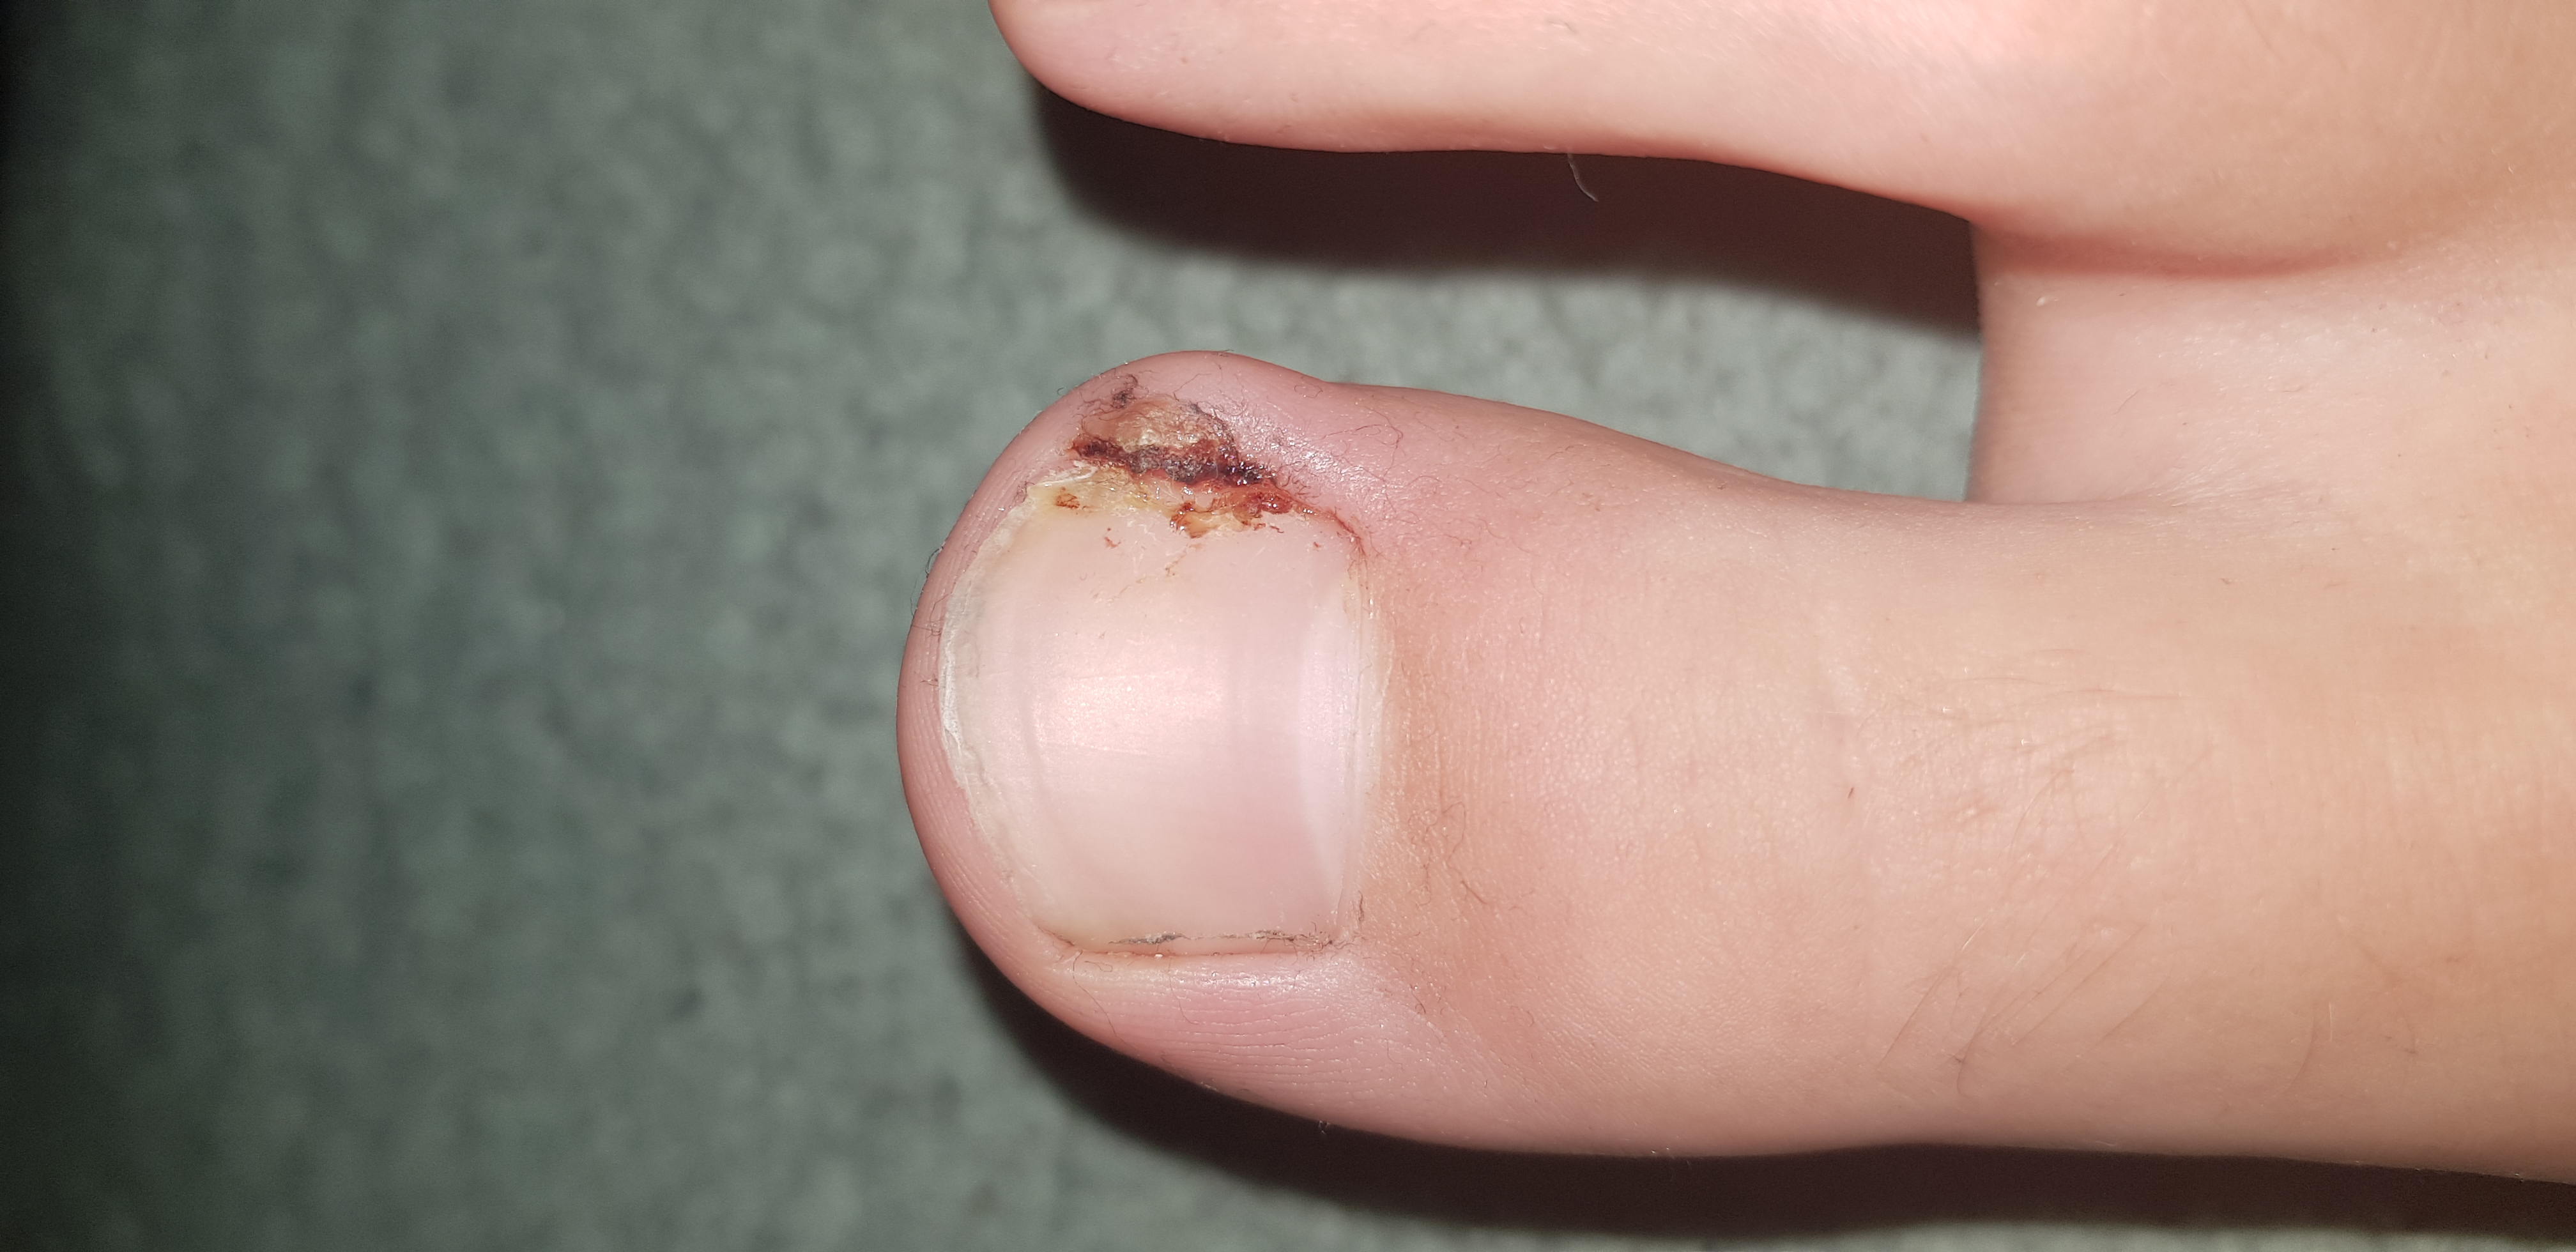 Nagelbett Entzündung oder ein eingewachsener nagel?